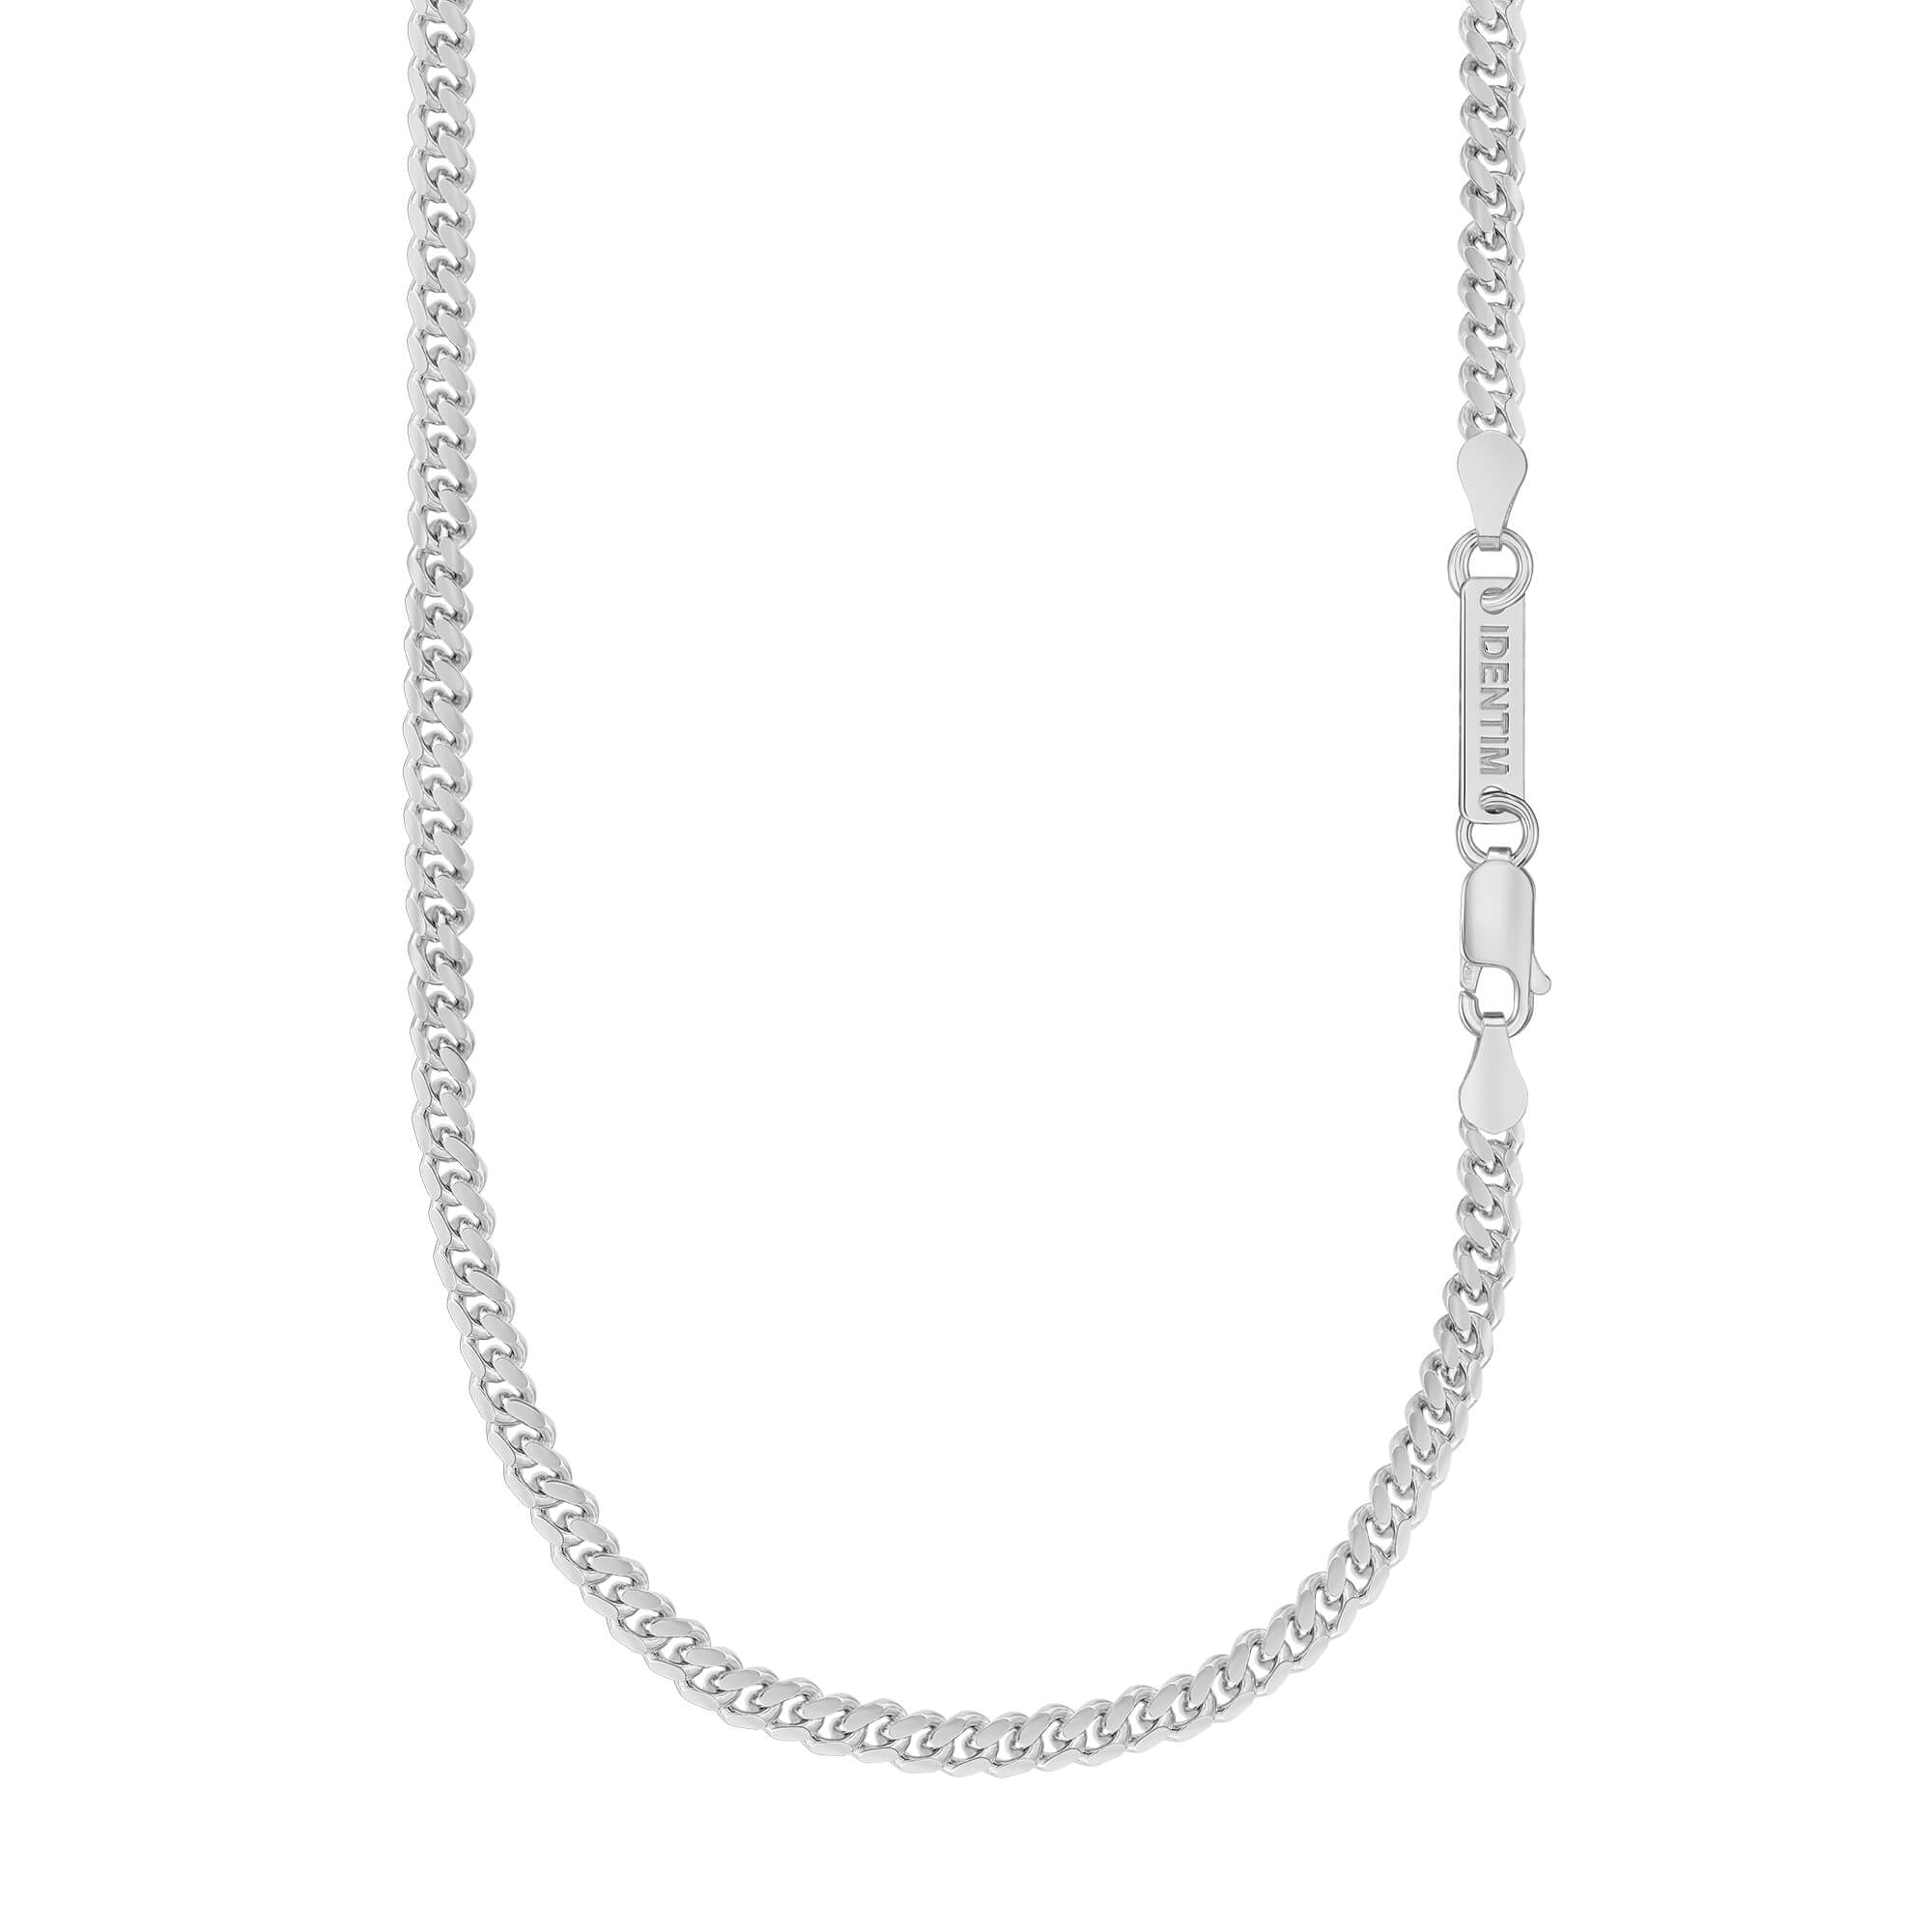 IDENTIM® Herren Halskette Panzerkette Kubanische Kette Herrenkette  Silberkette 4.00mm 925 Silber Rhodiniert